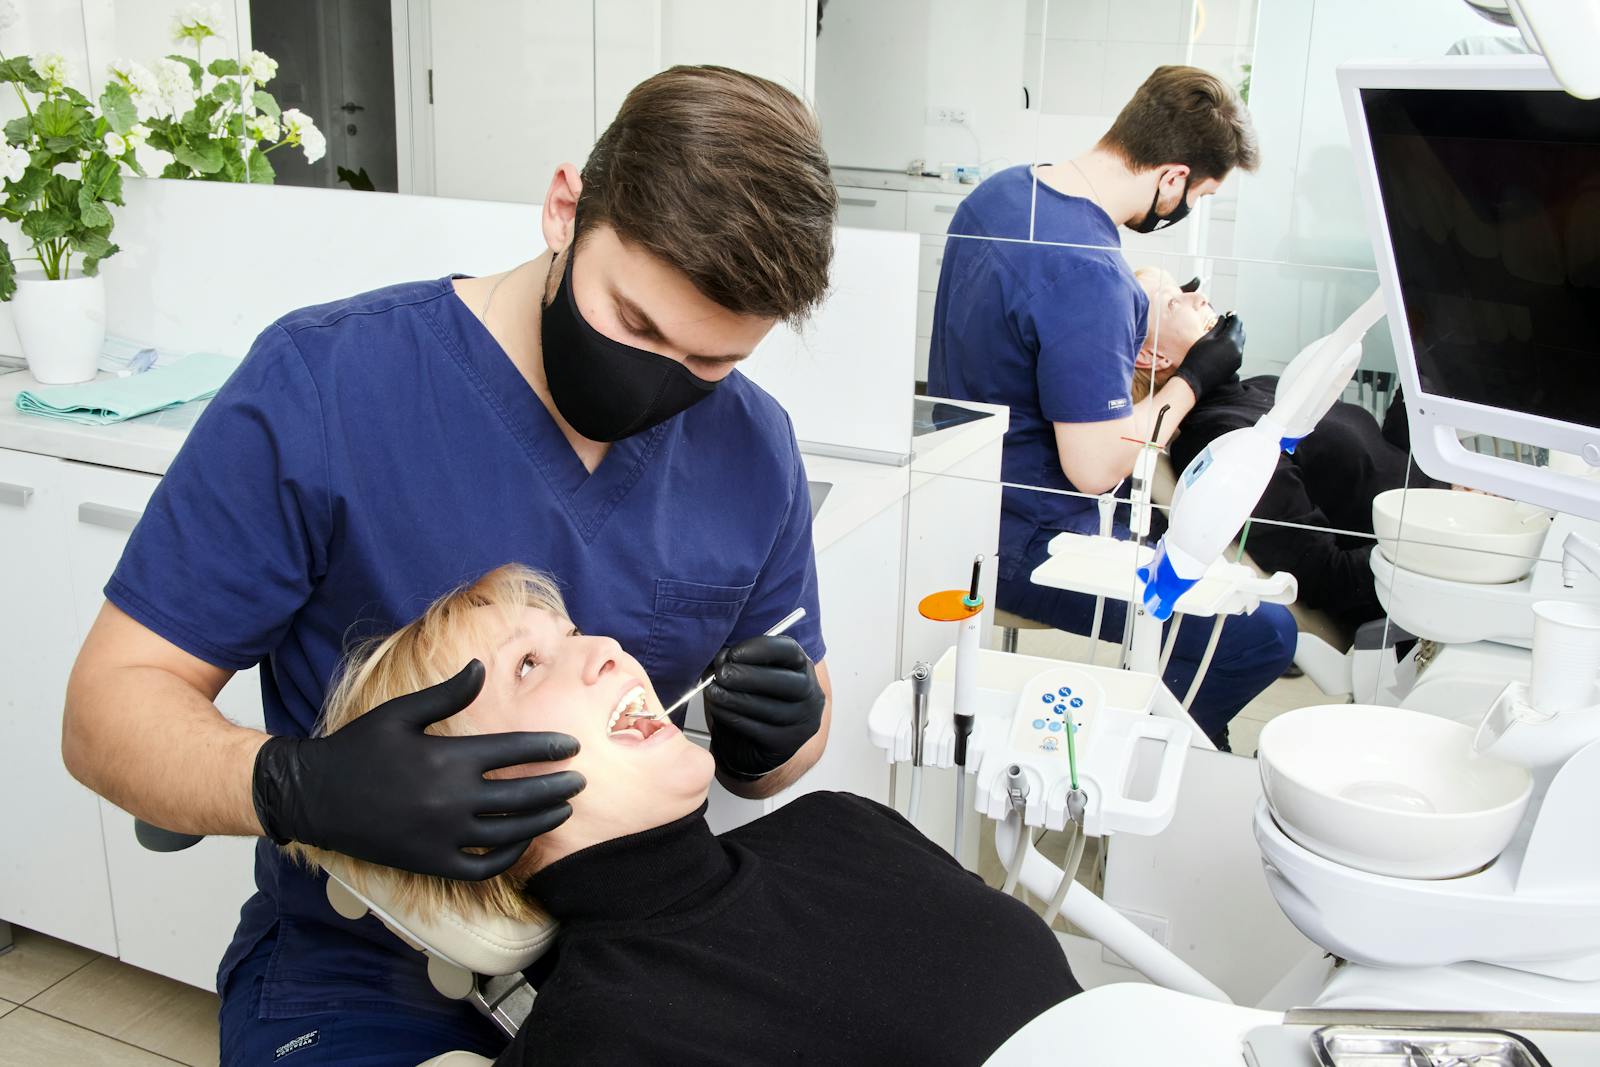 marco dental tourism dentist belgrade serbia fotos